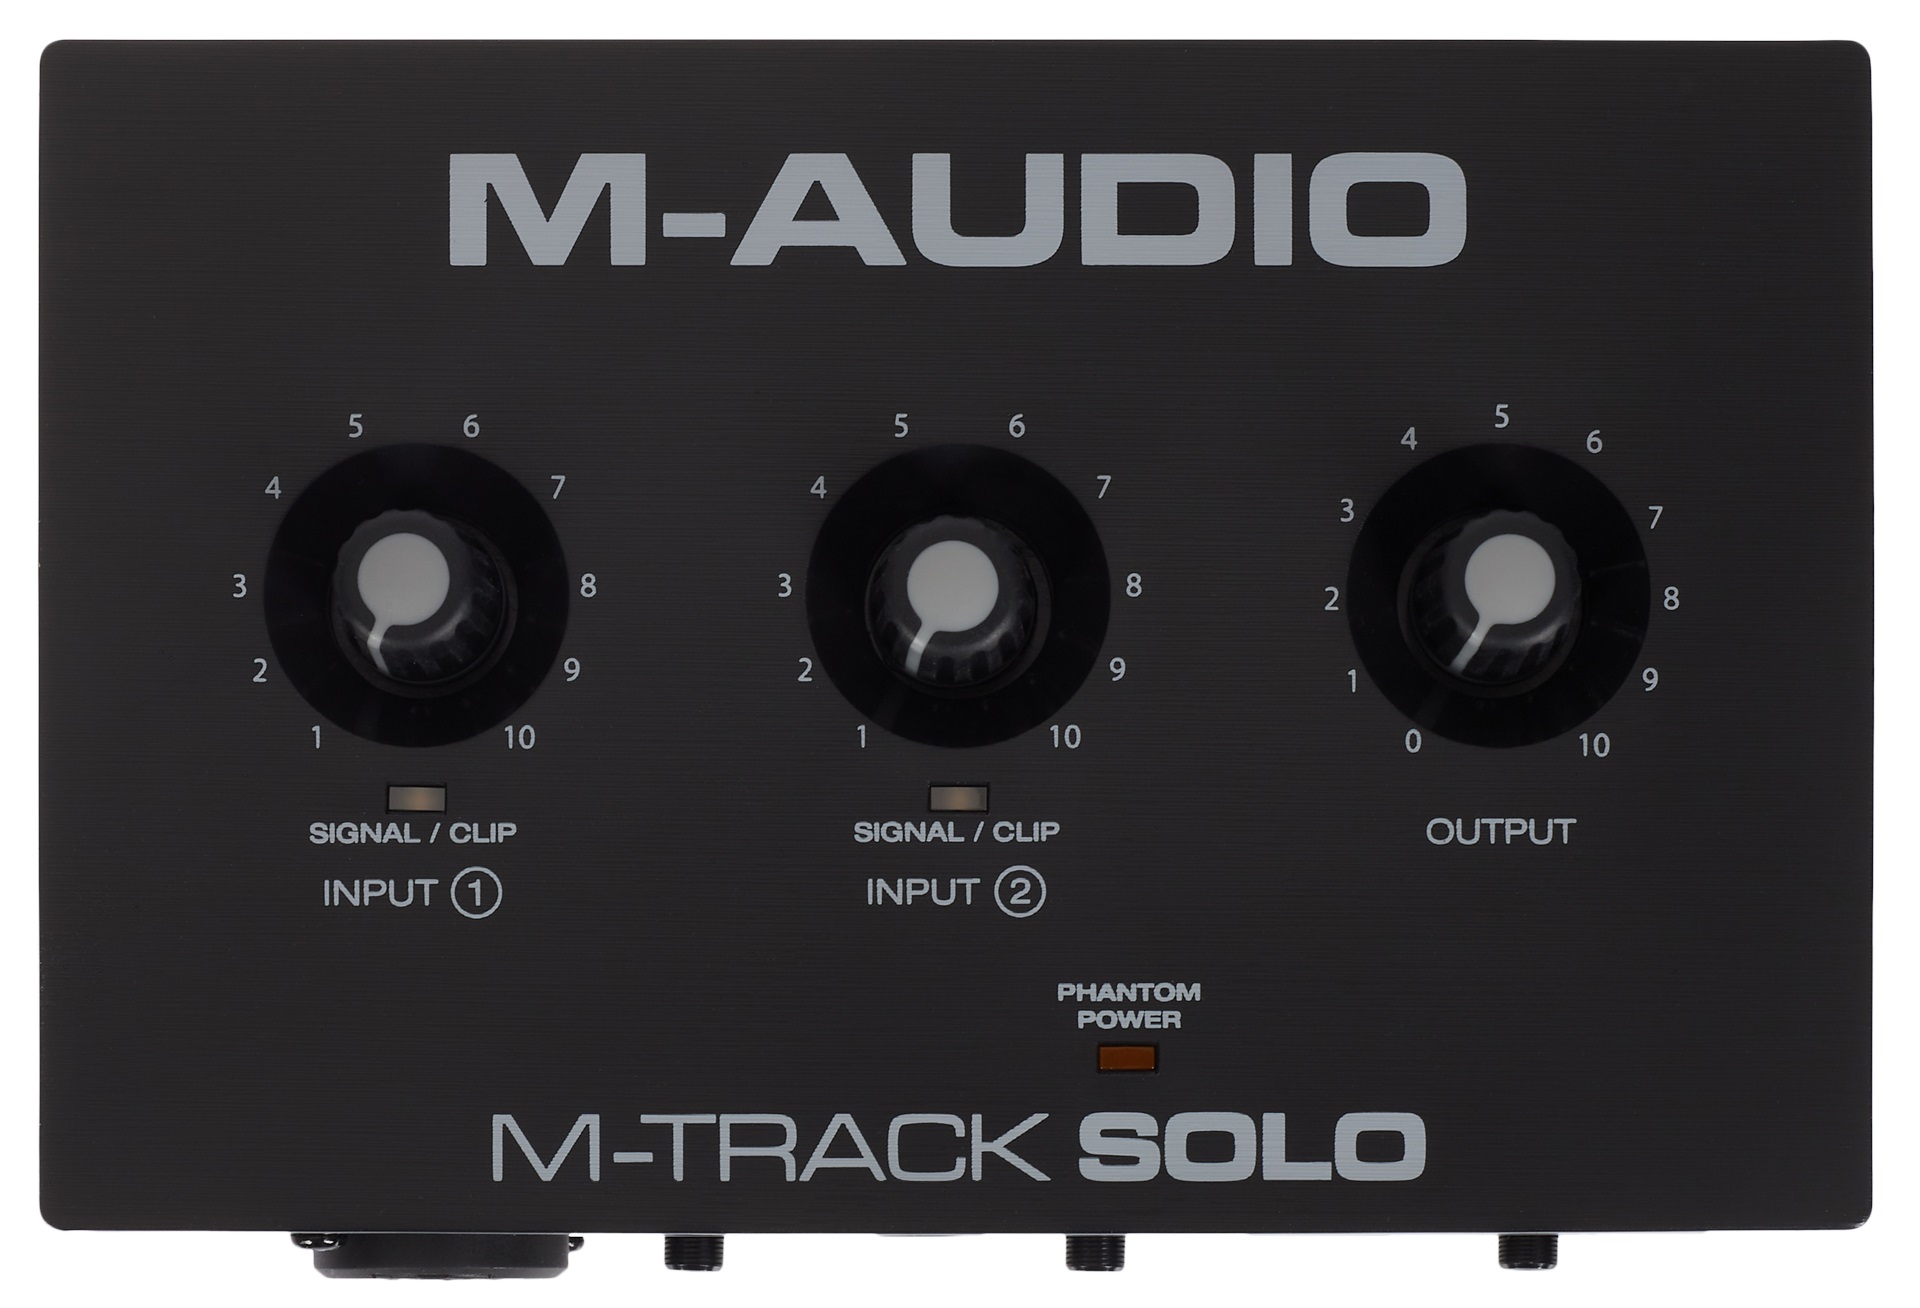 M-Audio M-Track SOLO